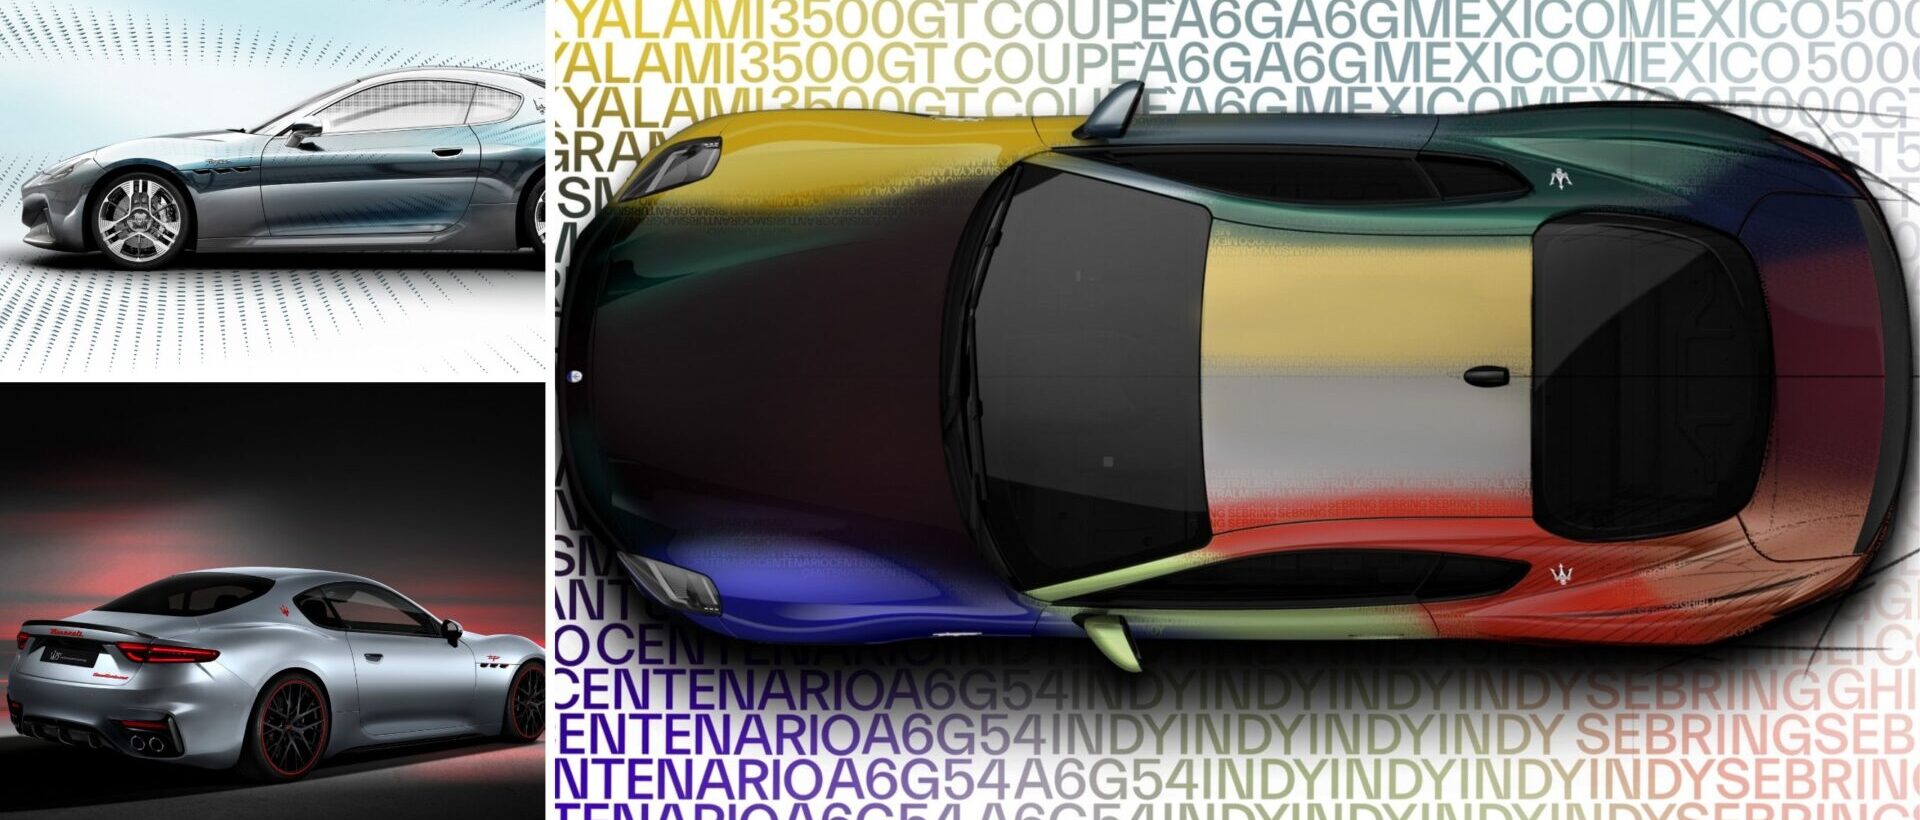 Дебюты Maserati GranTurismo на Неделе дизайна в Милане включают в себя реальные, виртуальные уникальные экземпляры